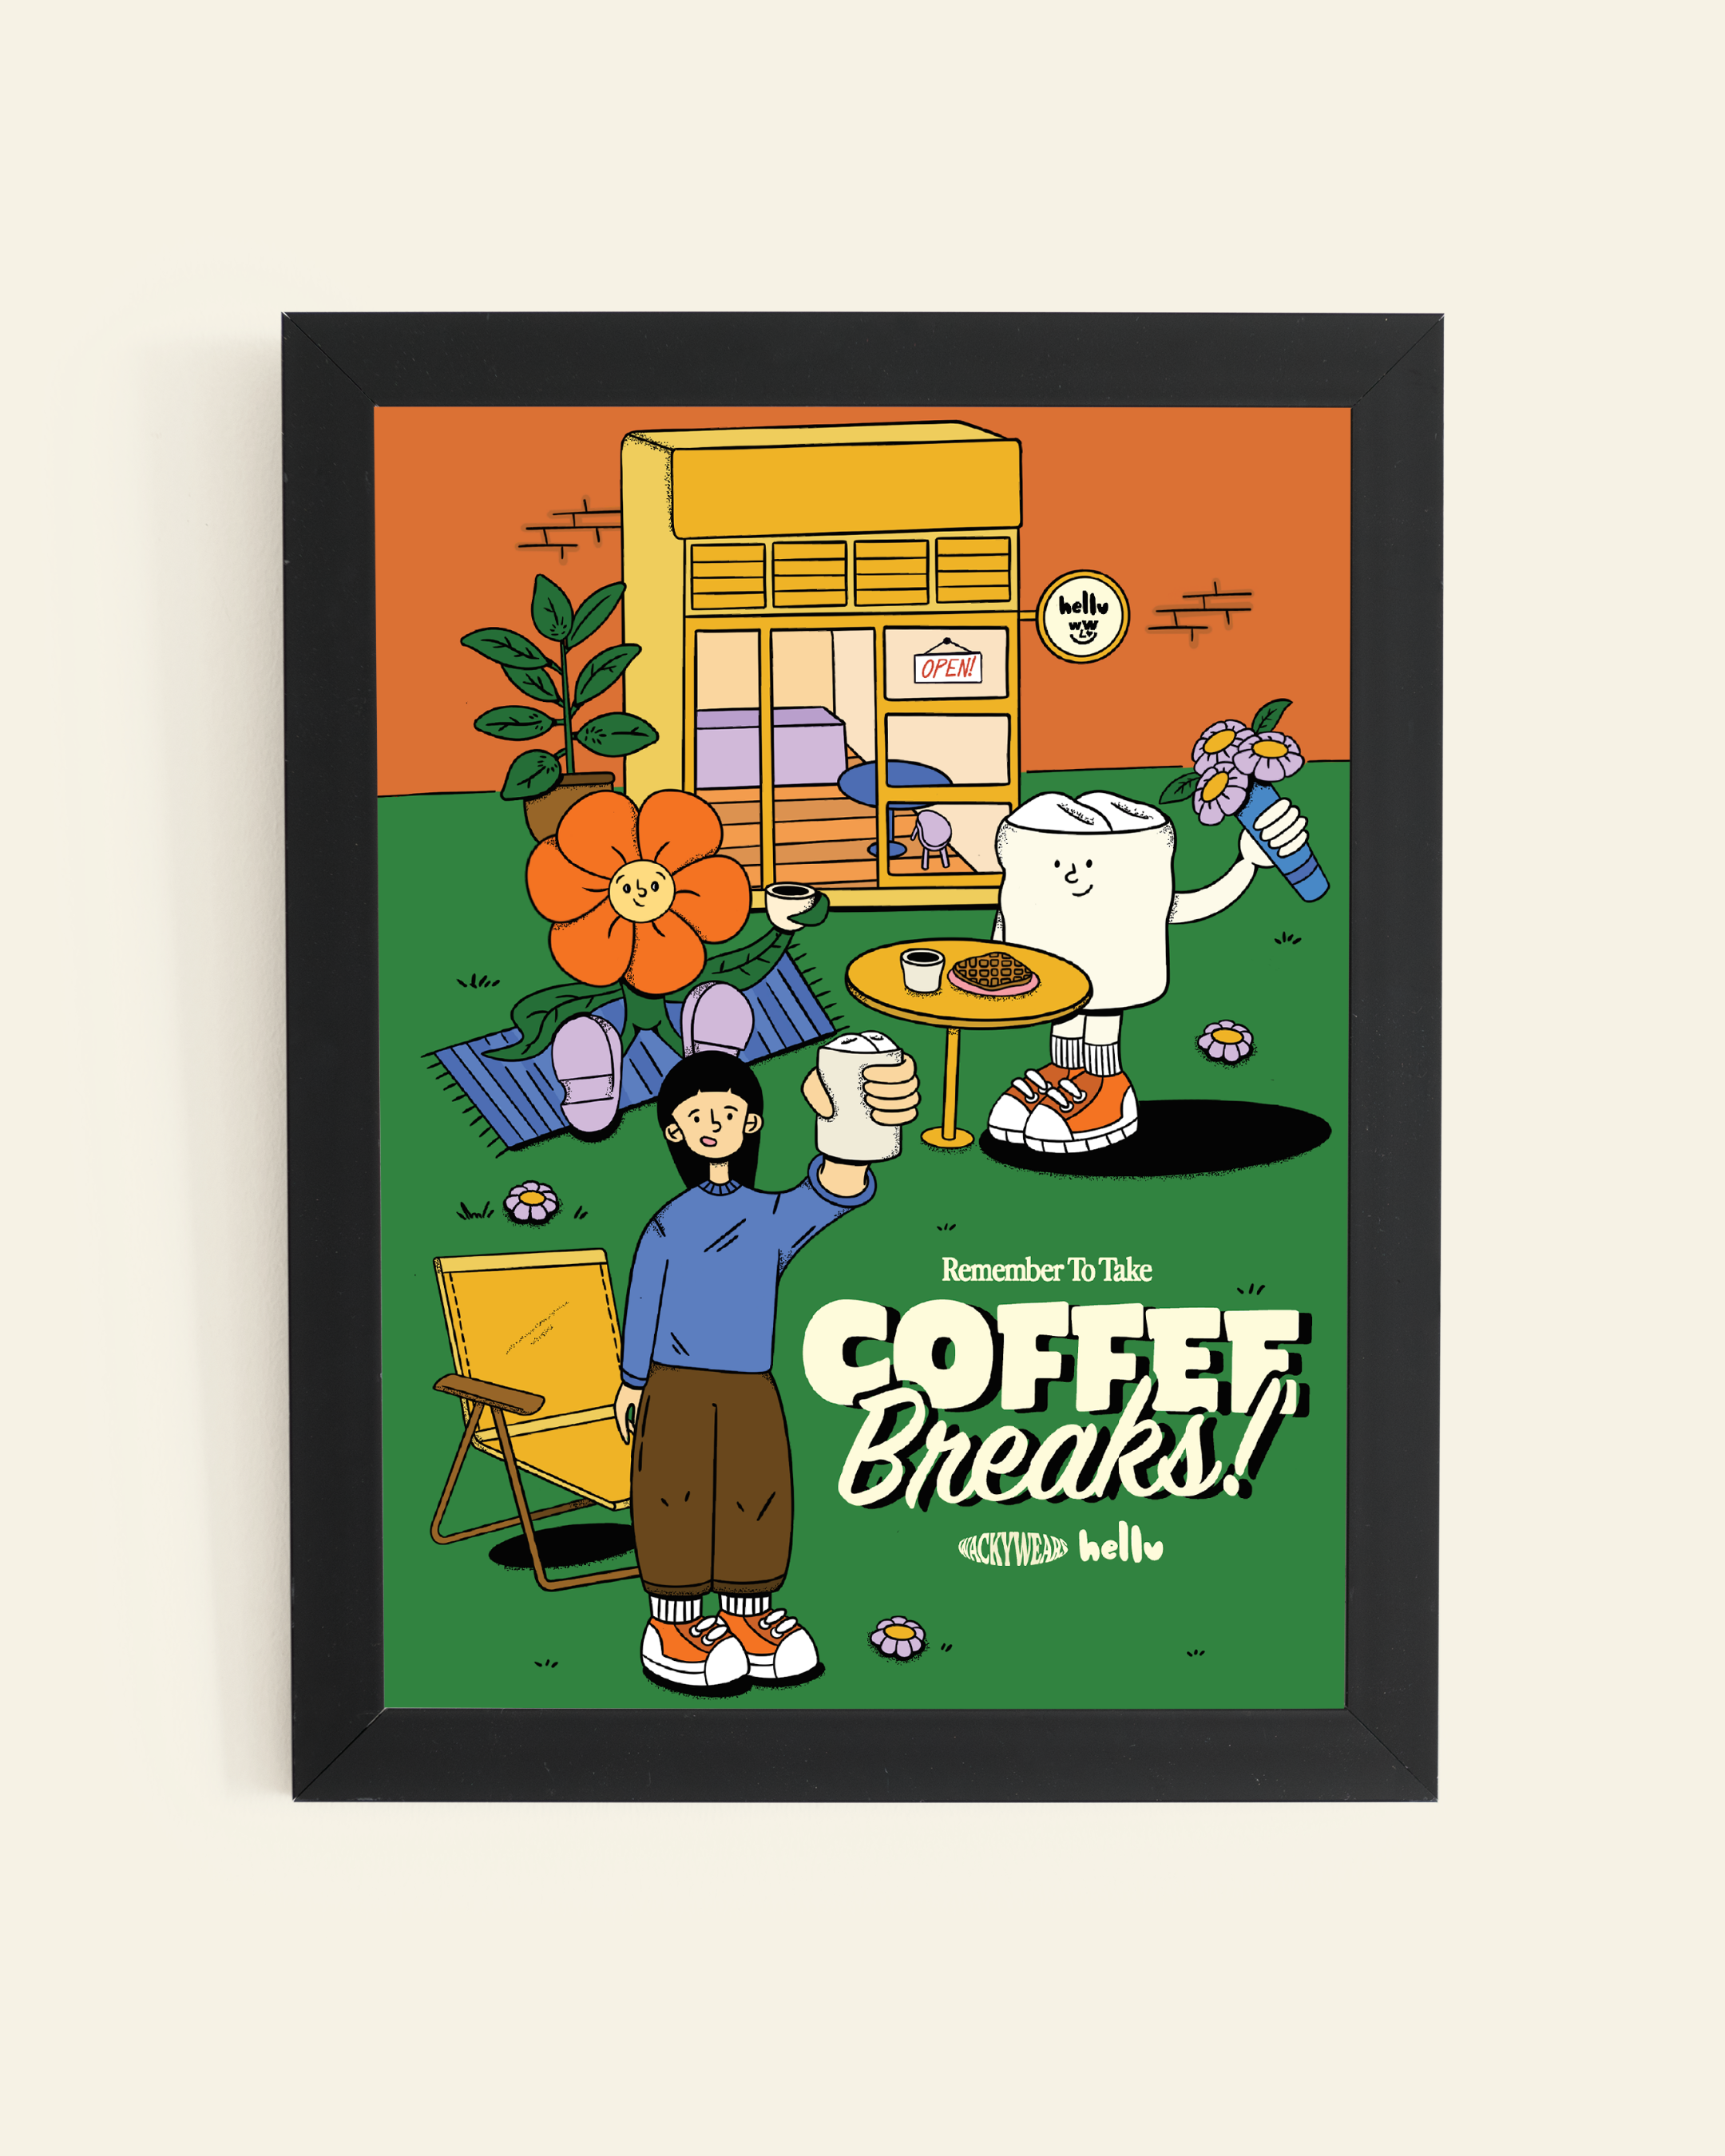 Friends Having Coffee Break Art Print (A4/A3)